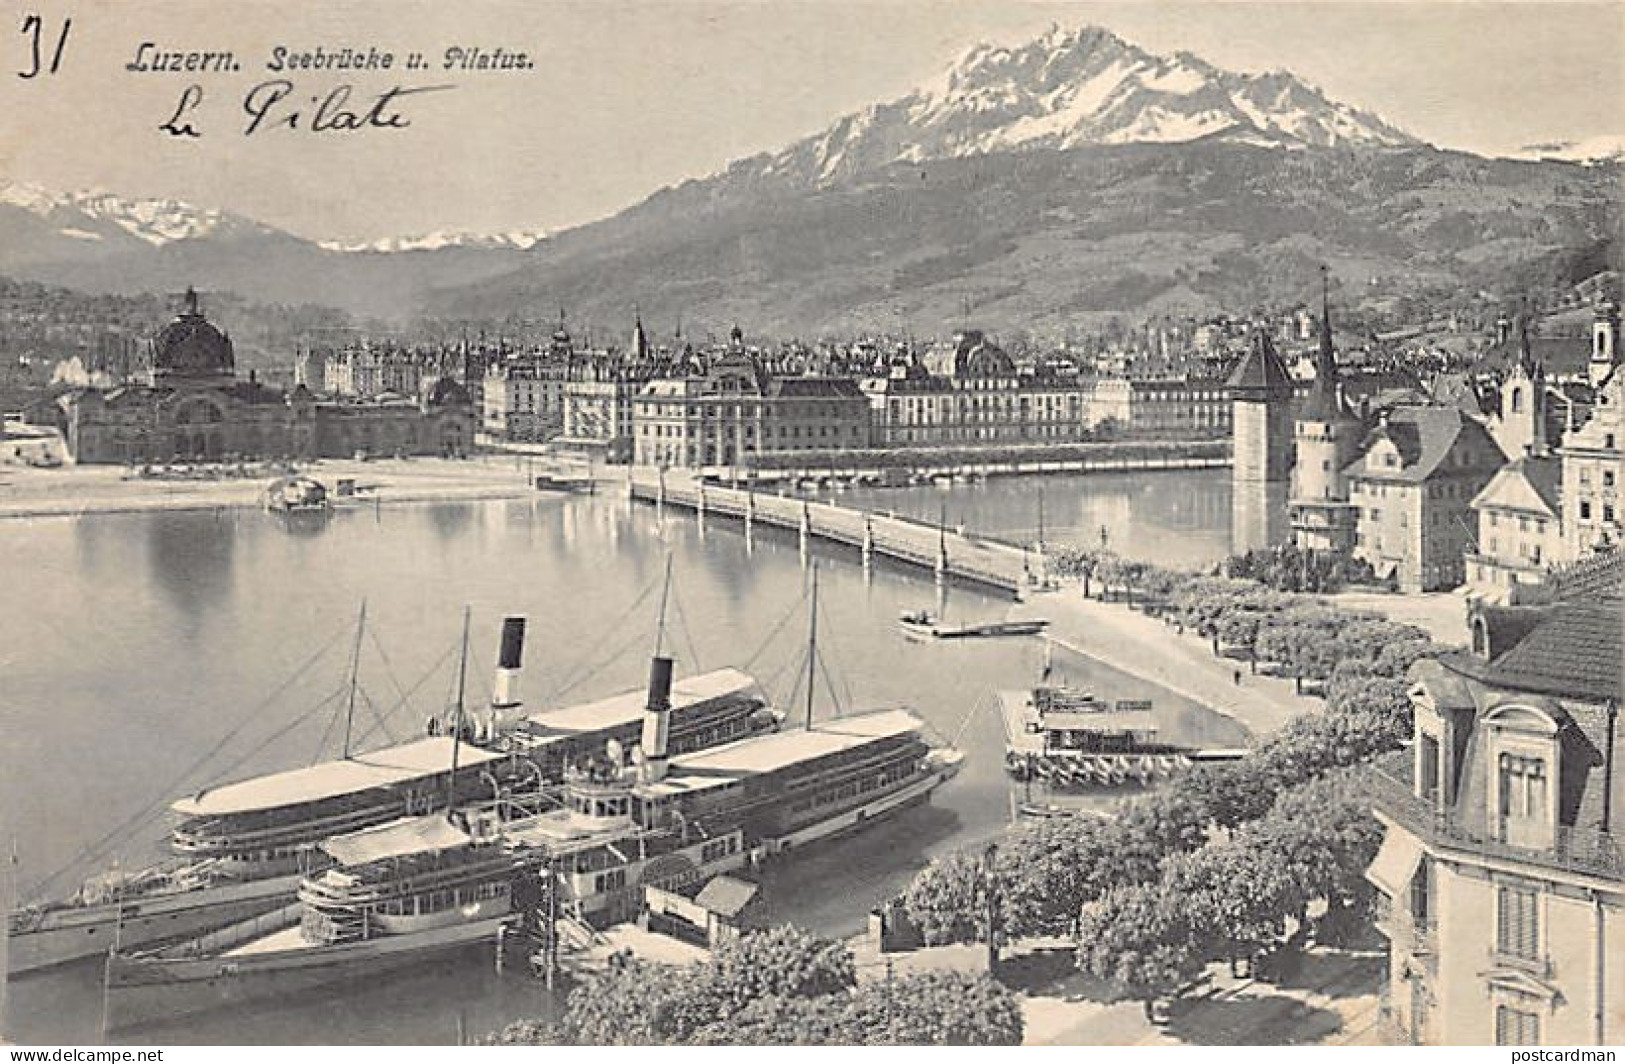 LUZERN - Dampfer Unterwalden - Seebrücke U. Pilatus - Verlag E. Goetz 2664 - Luzern